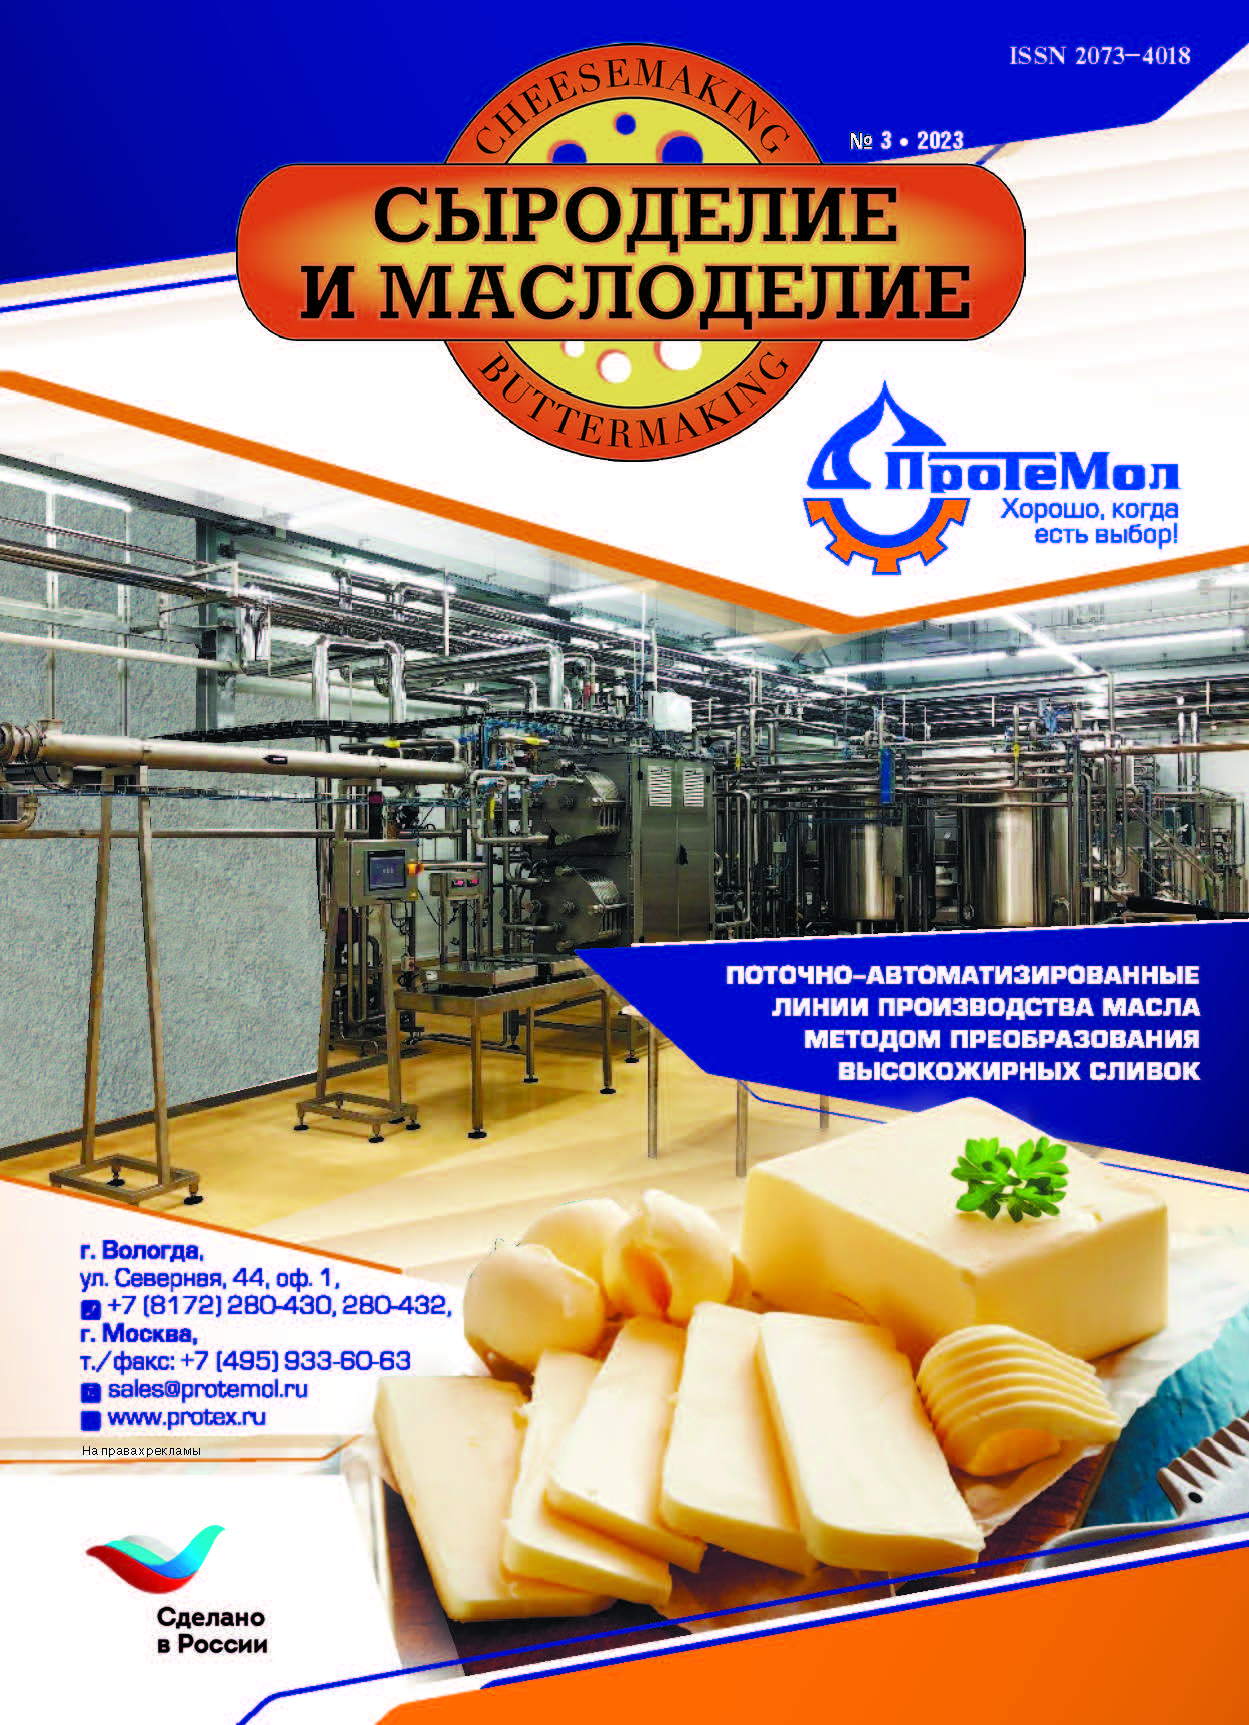             Российское производство сливочного масла и спредов
    